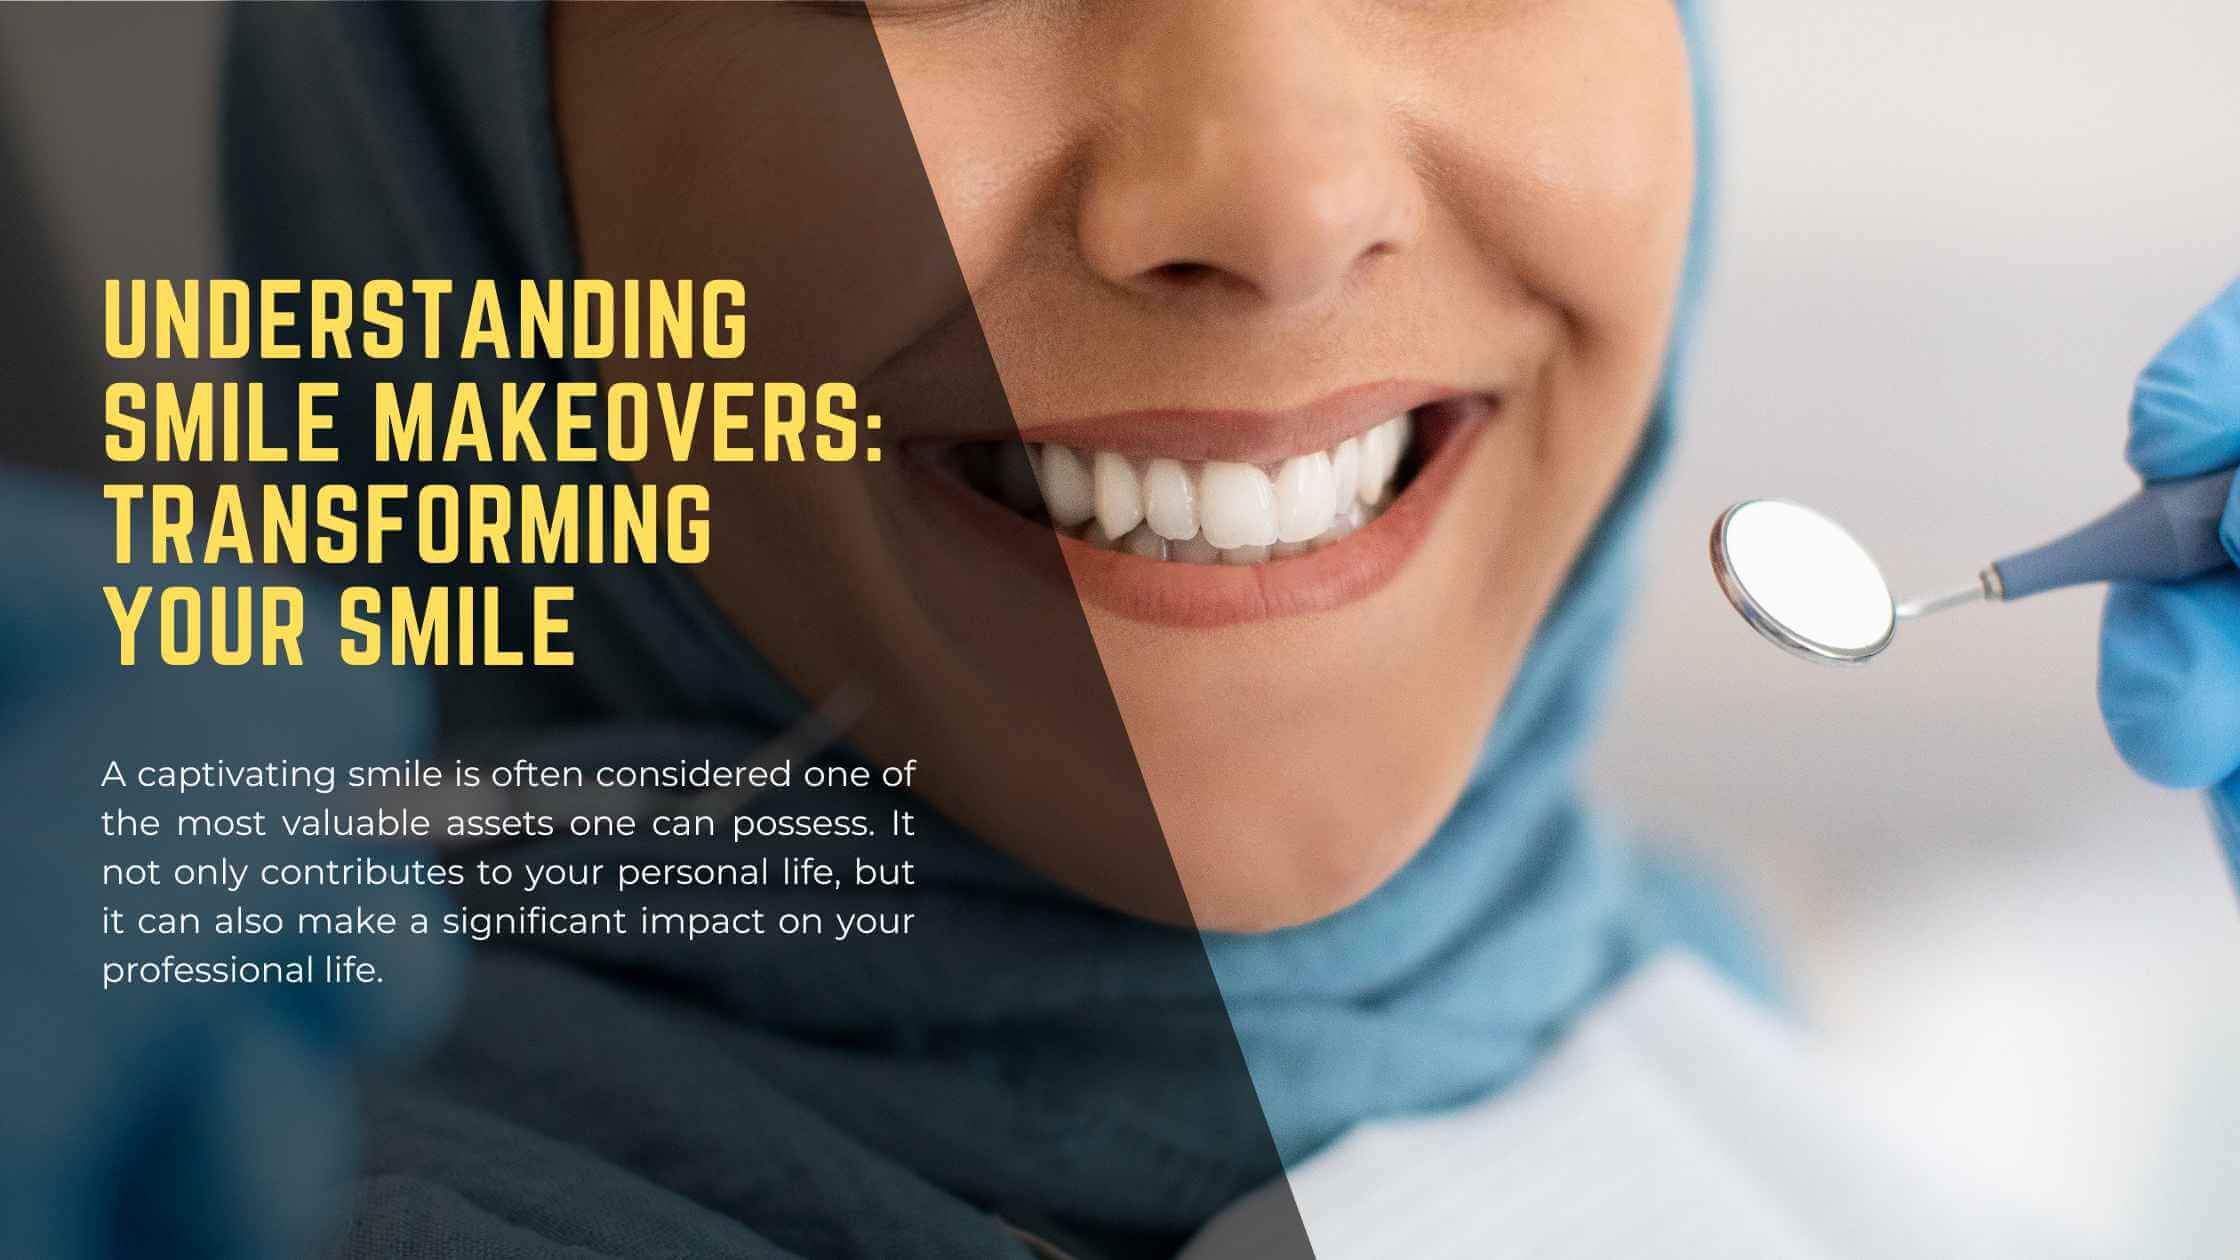 Understanding Smile Makeovers - Teeth Whitening Dental Veneers - District Dentistry Charlotte